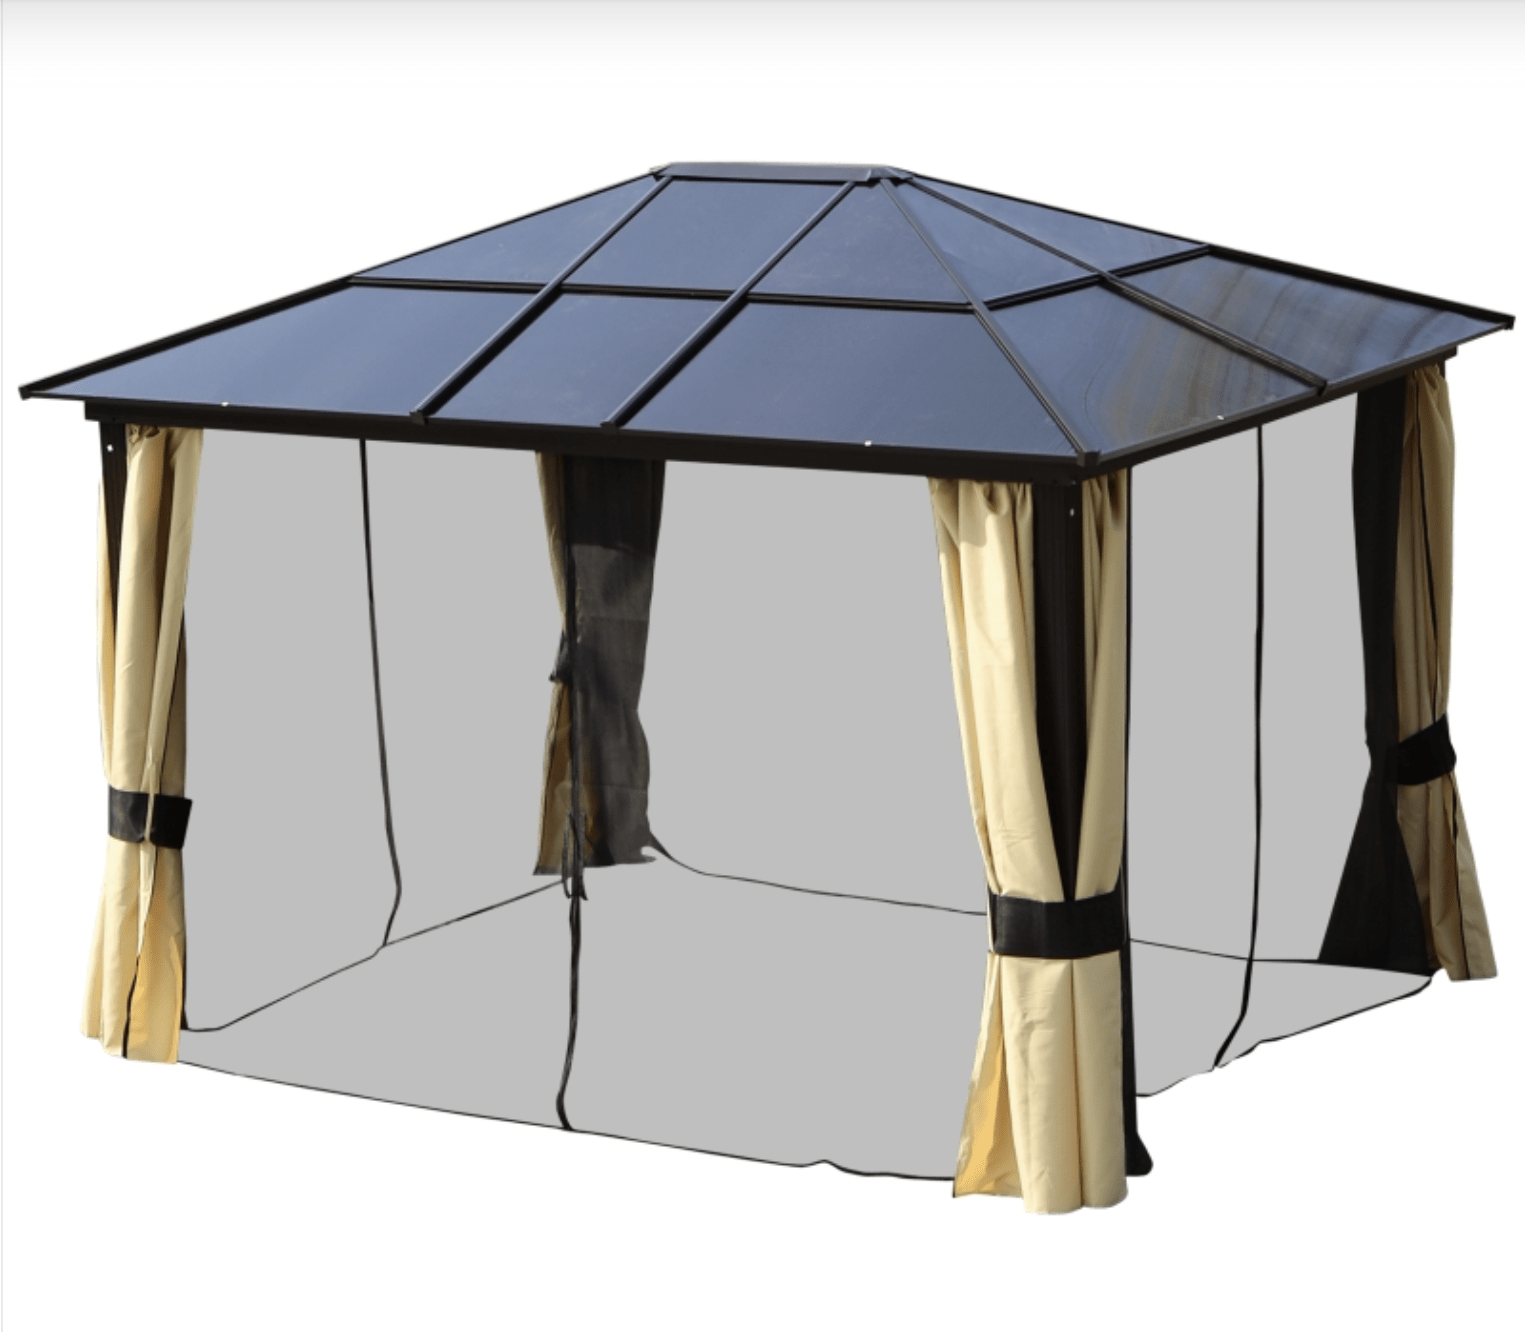 SolarLite Pavilion: 3 x 3.6m Aluminium-Clad Garden Gazebo with Polycarbonate Roof, LED Illumination & Protective Netting - Trade Warehouse